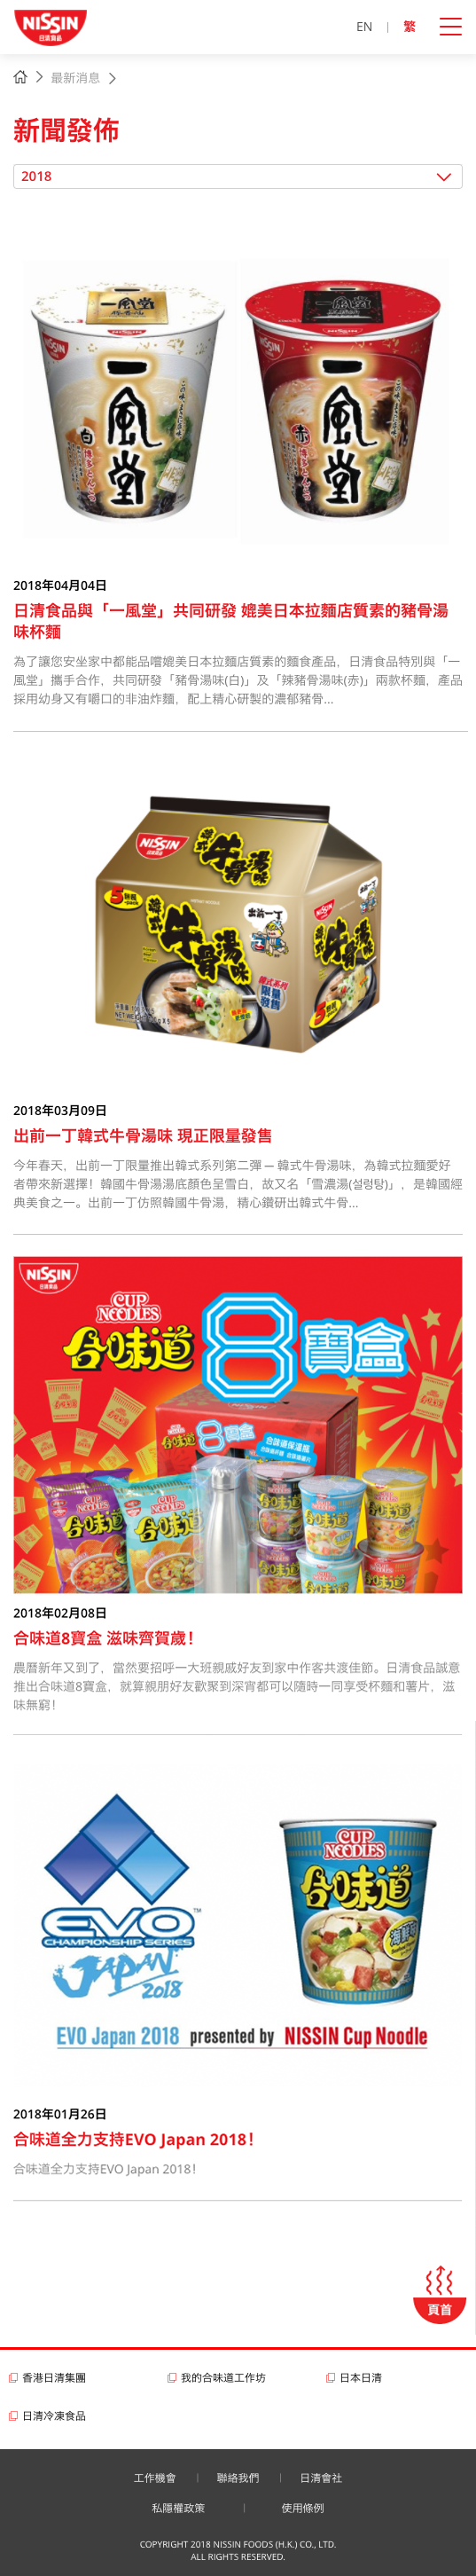 Nissin Foods HK website screenshot for tablet version 3 of 5